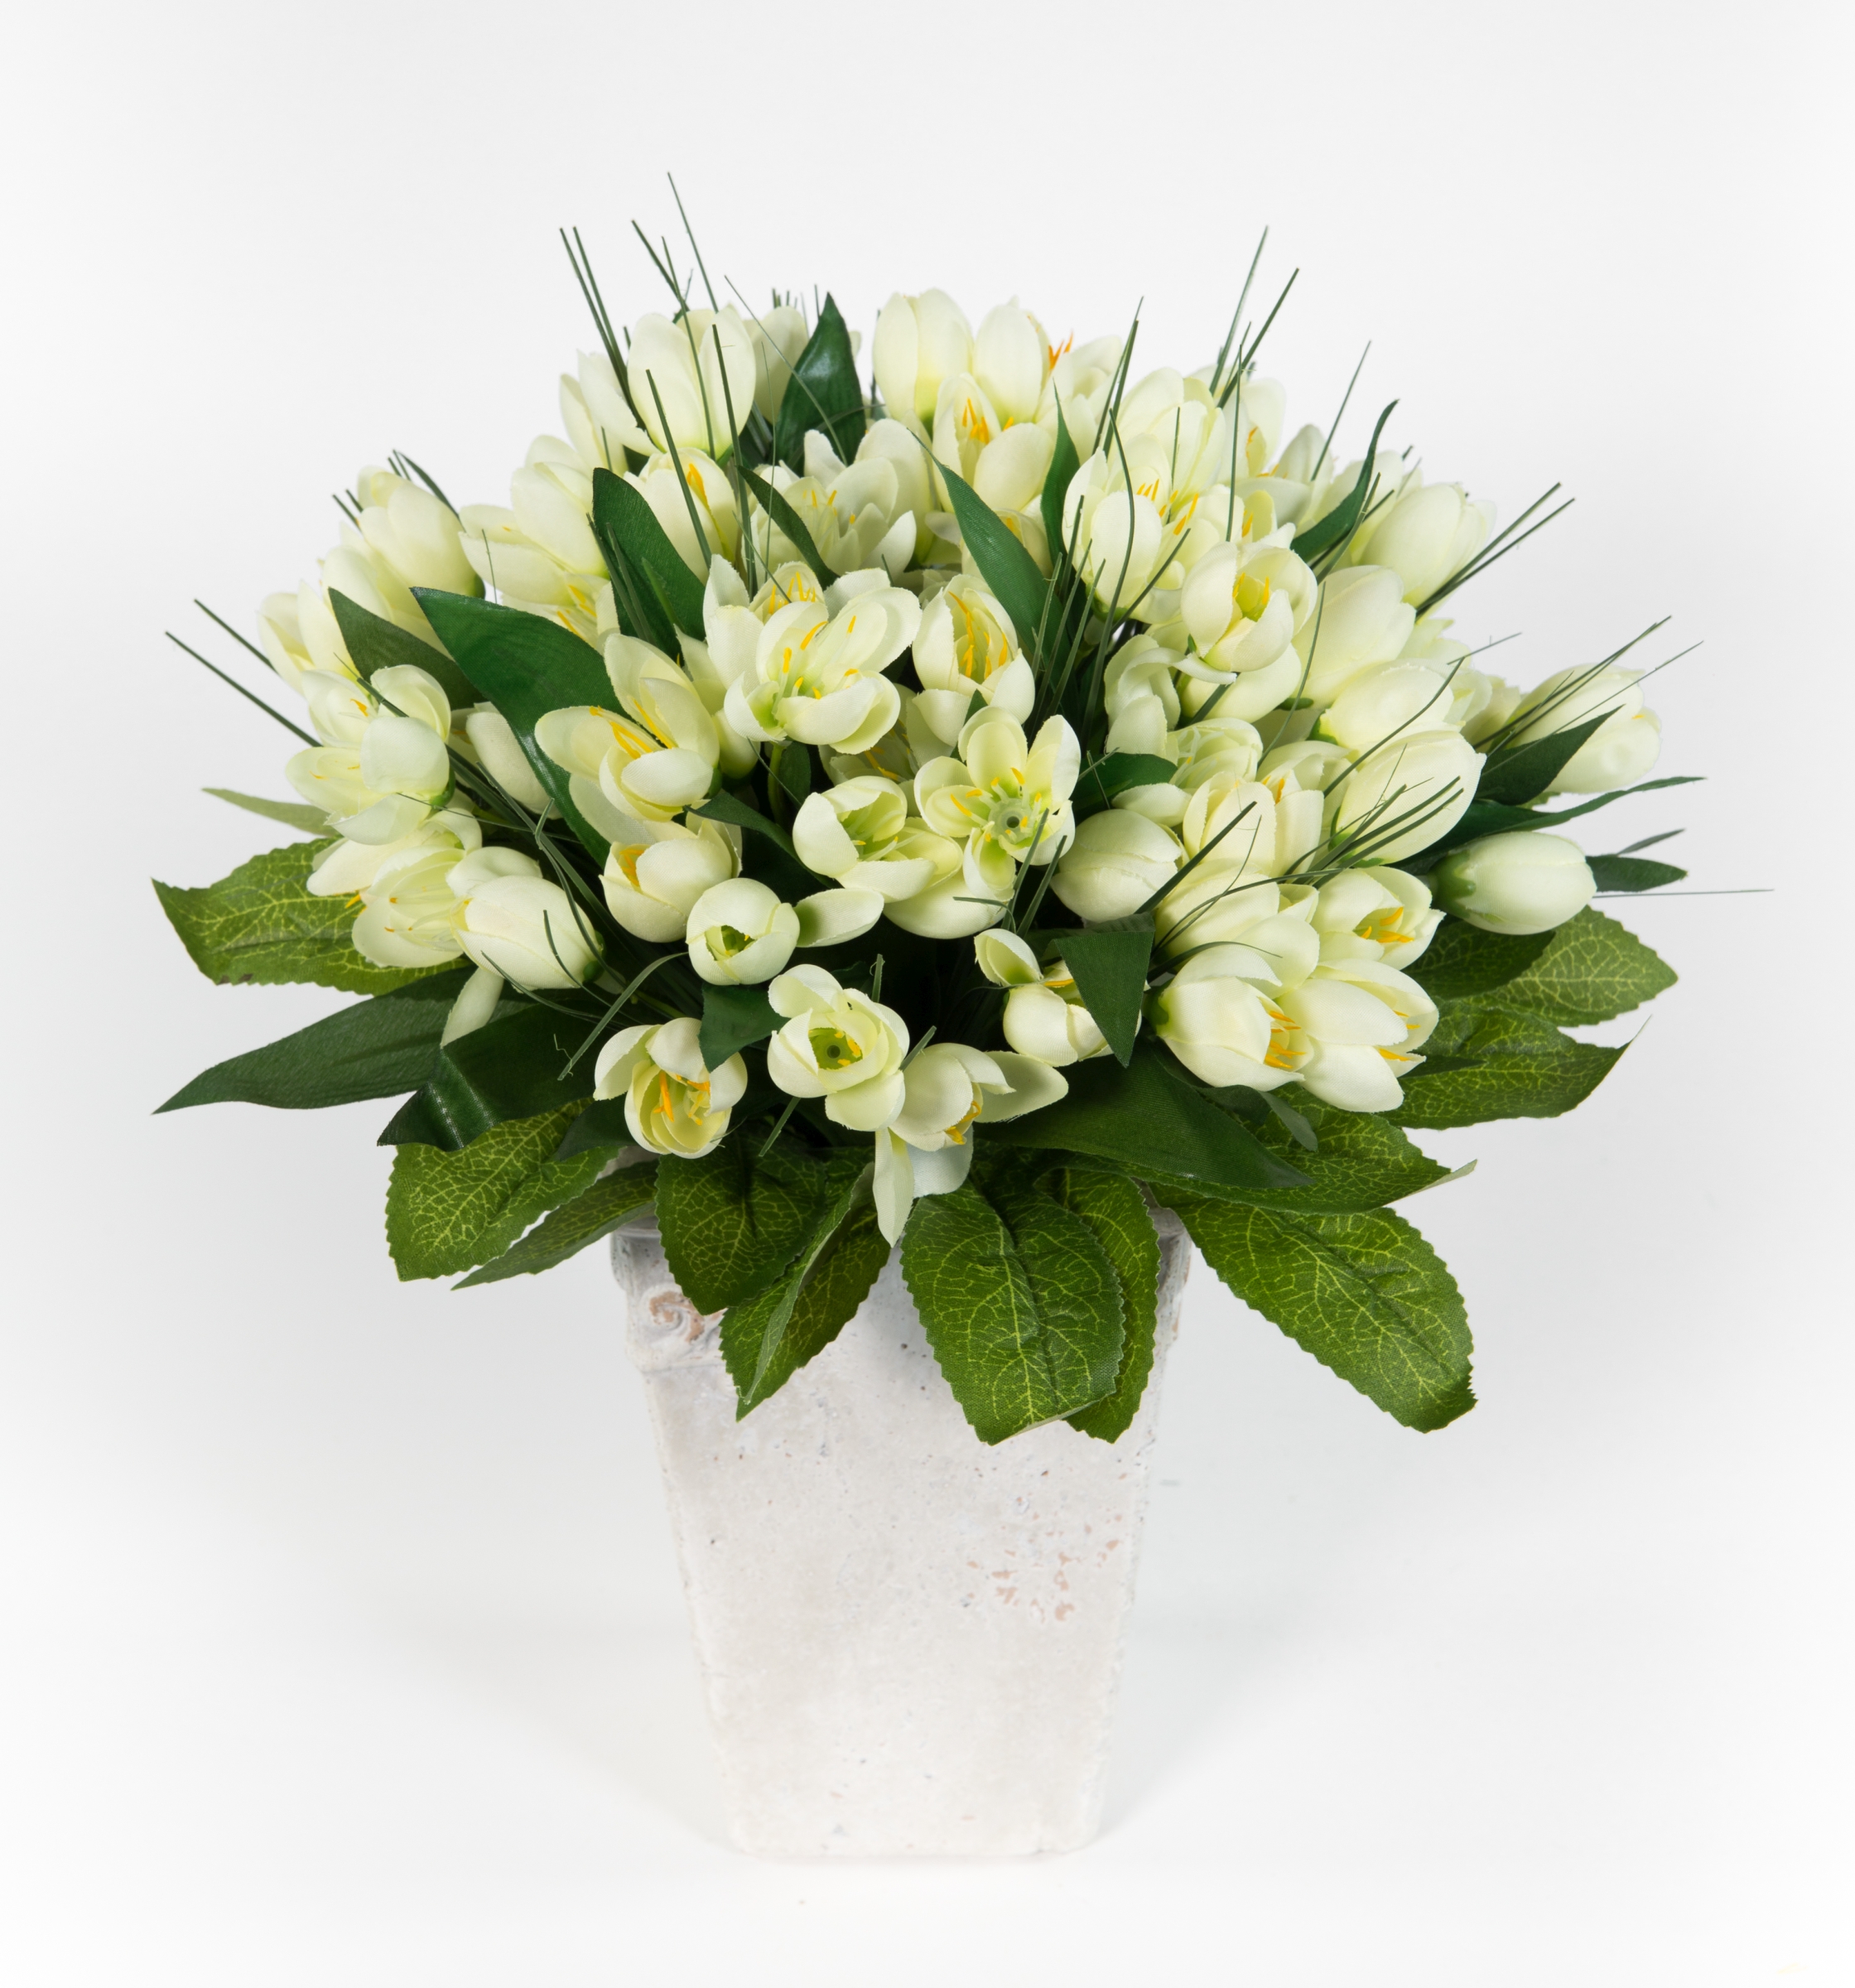 Krokusstrauß 32x30cm weiß Frühlingsstrauß Kunstblumen künstlicher handgebundener Strauß Blumenstrauß